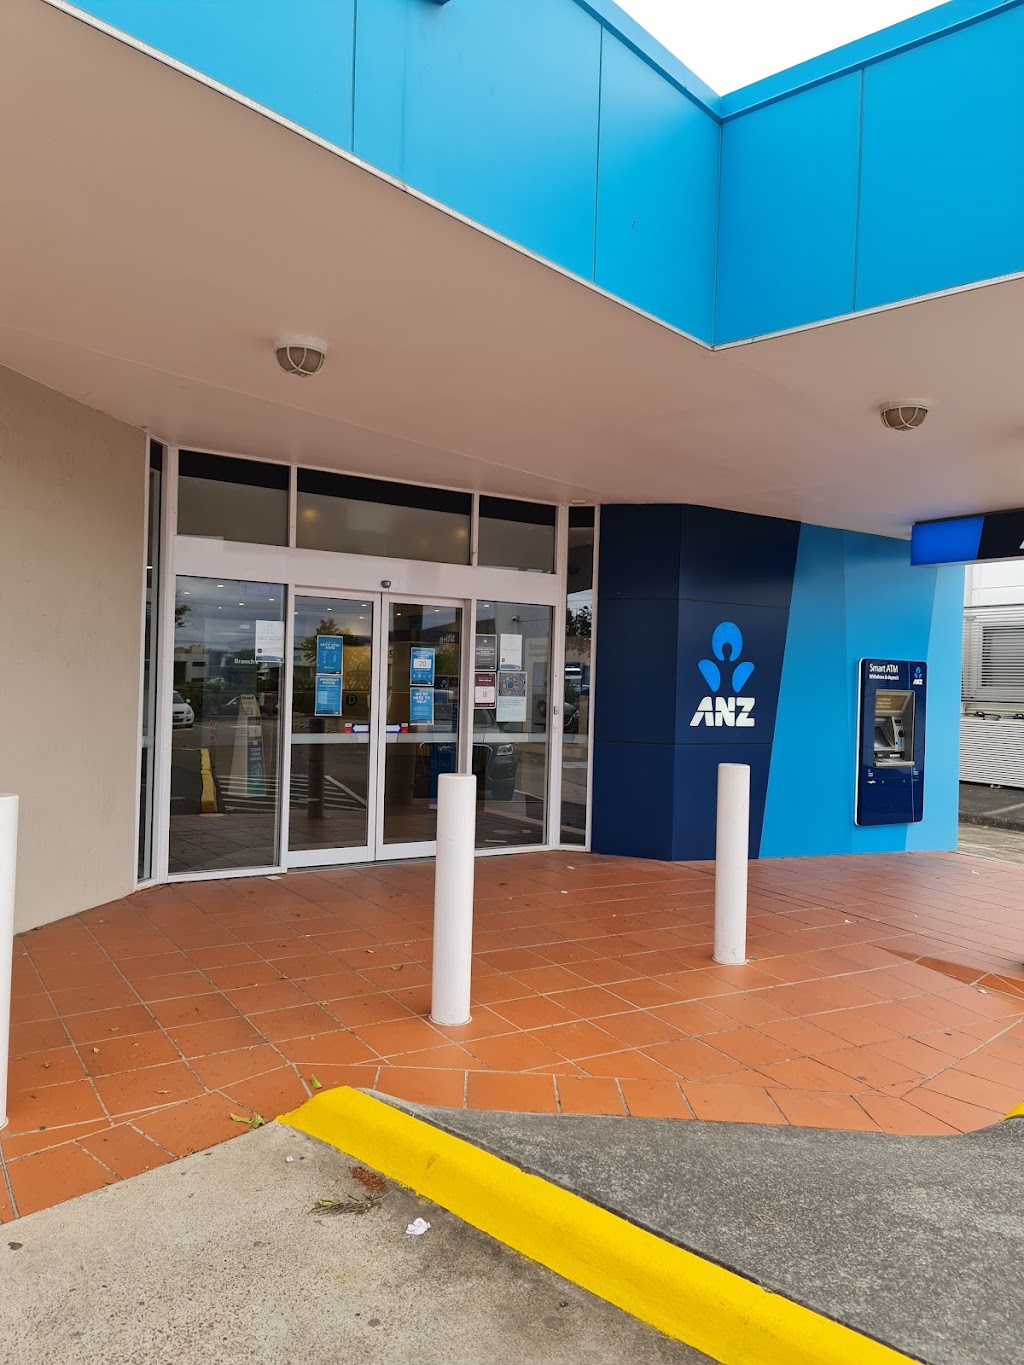 ANZ ATM | atm | 16 Kerry Rd, Acacia Ridge QLD 4110, Australia | 131314 OR +61 131314